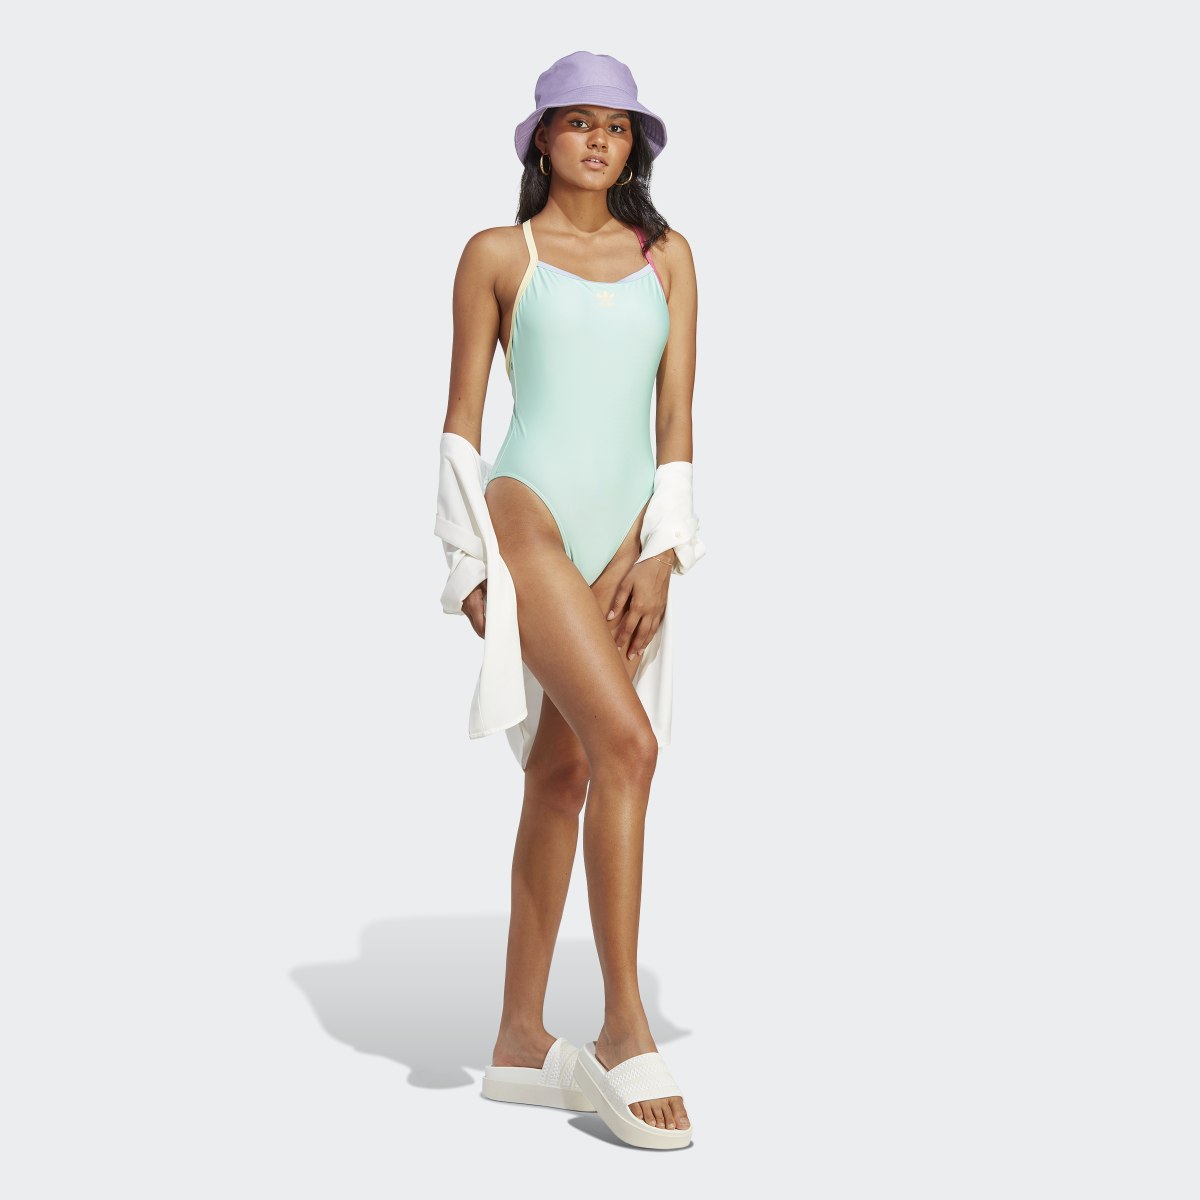 Adidas Originals Coney Island Cool Swimsuit. 5